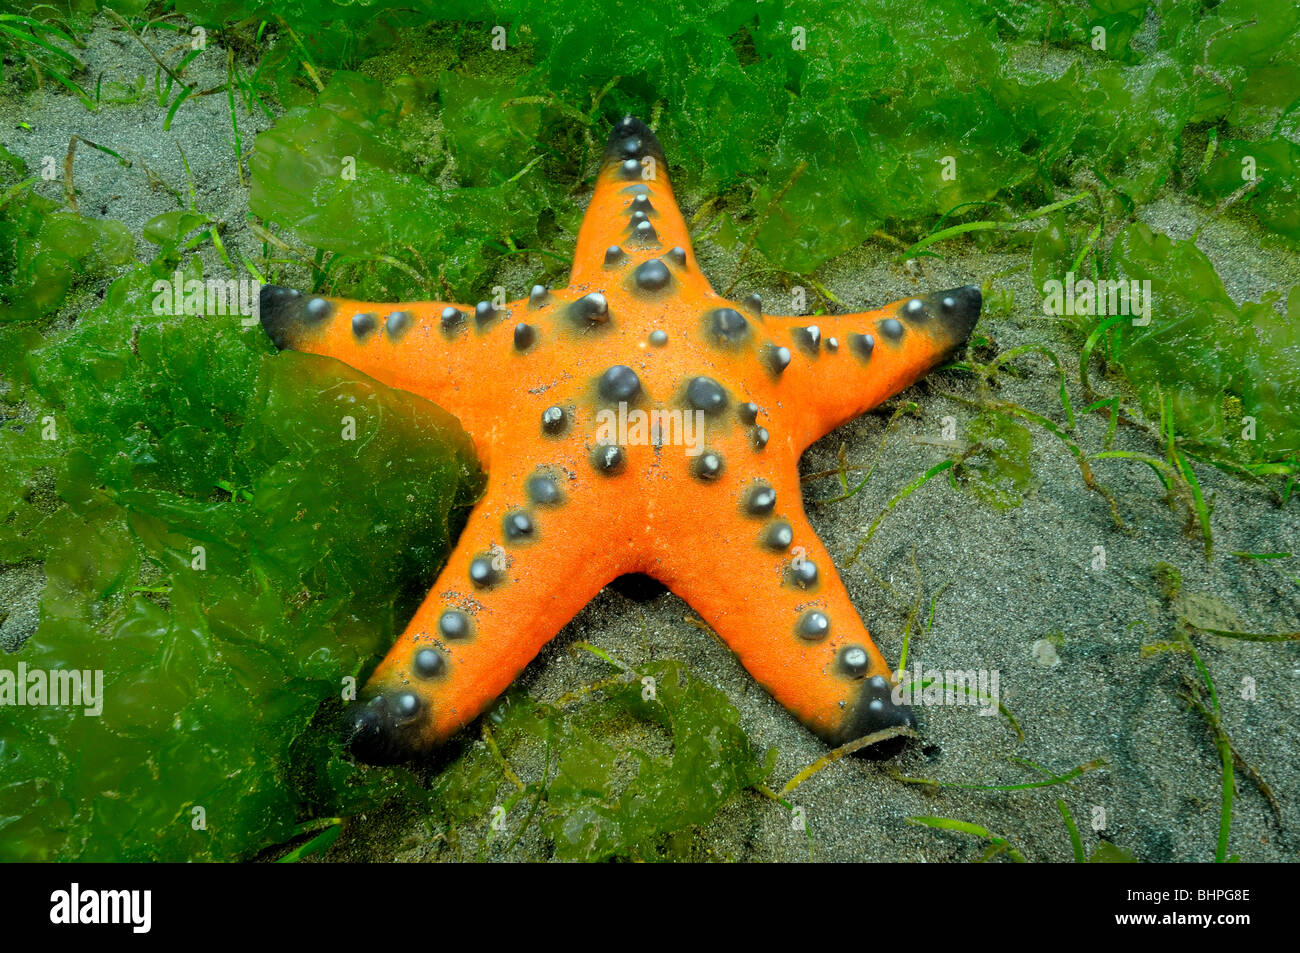 Protoreaster Nodosus, orange gehörnten Meer Sterne, Chocolate Chip Seestern, Secret Bay, Gilimanuk, Bali, Indo-Pazifischen Ozean Stockfoto